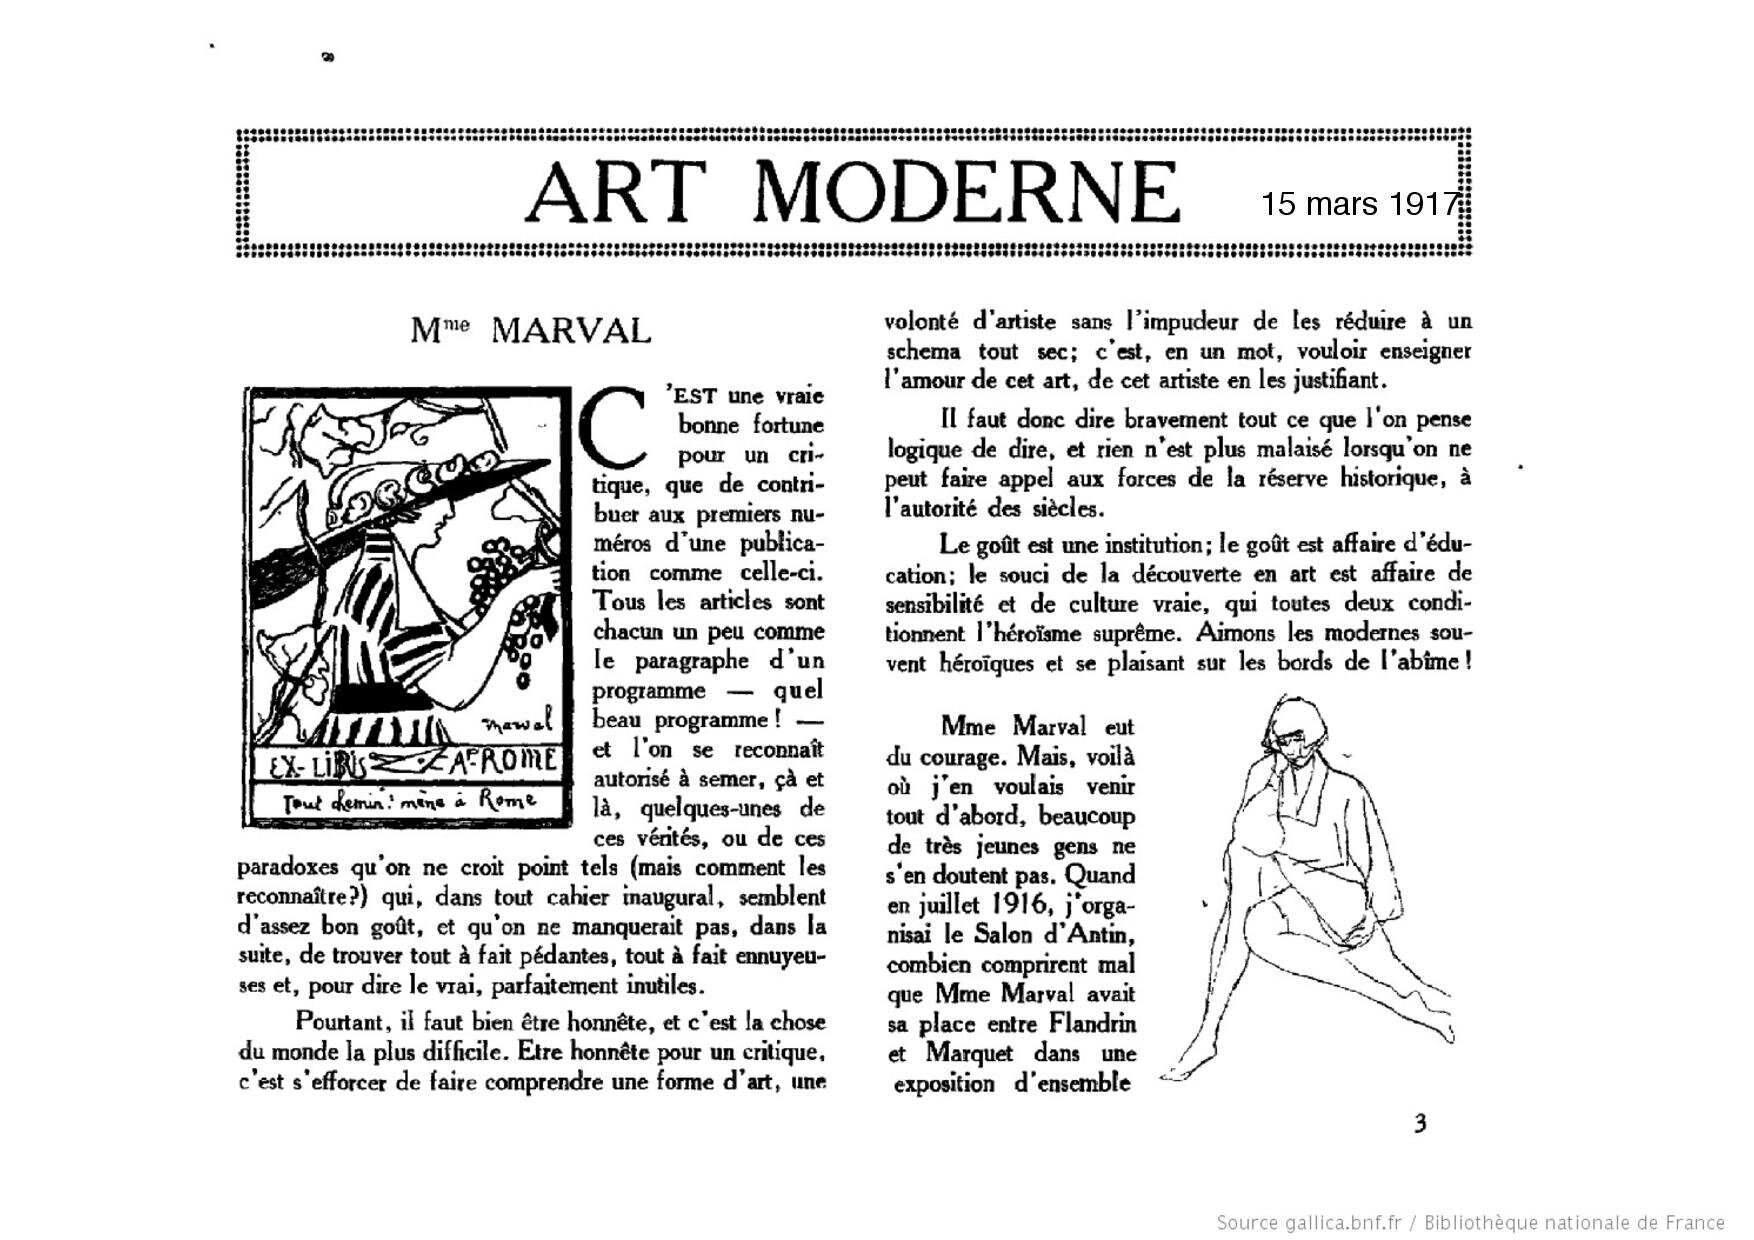 Le Carnet des Artistes, 15 mars 1917